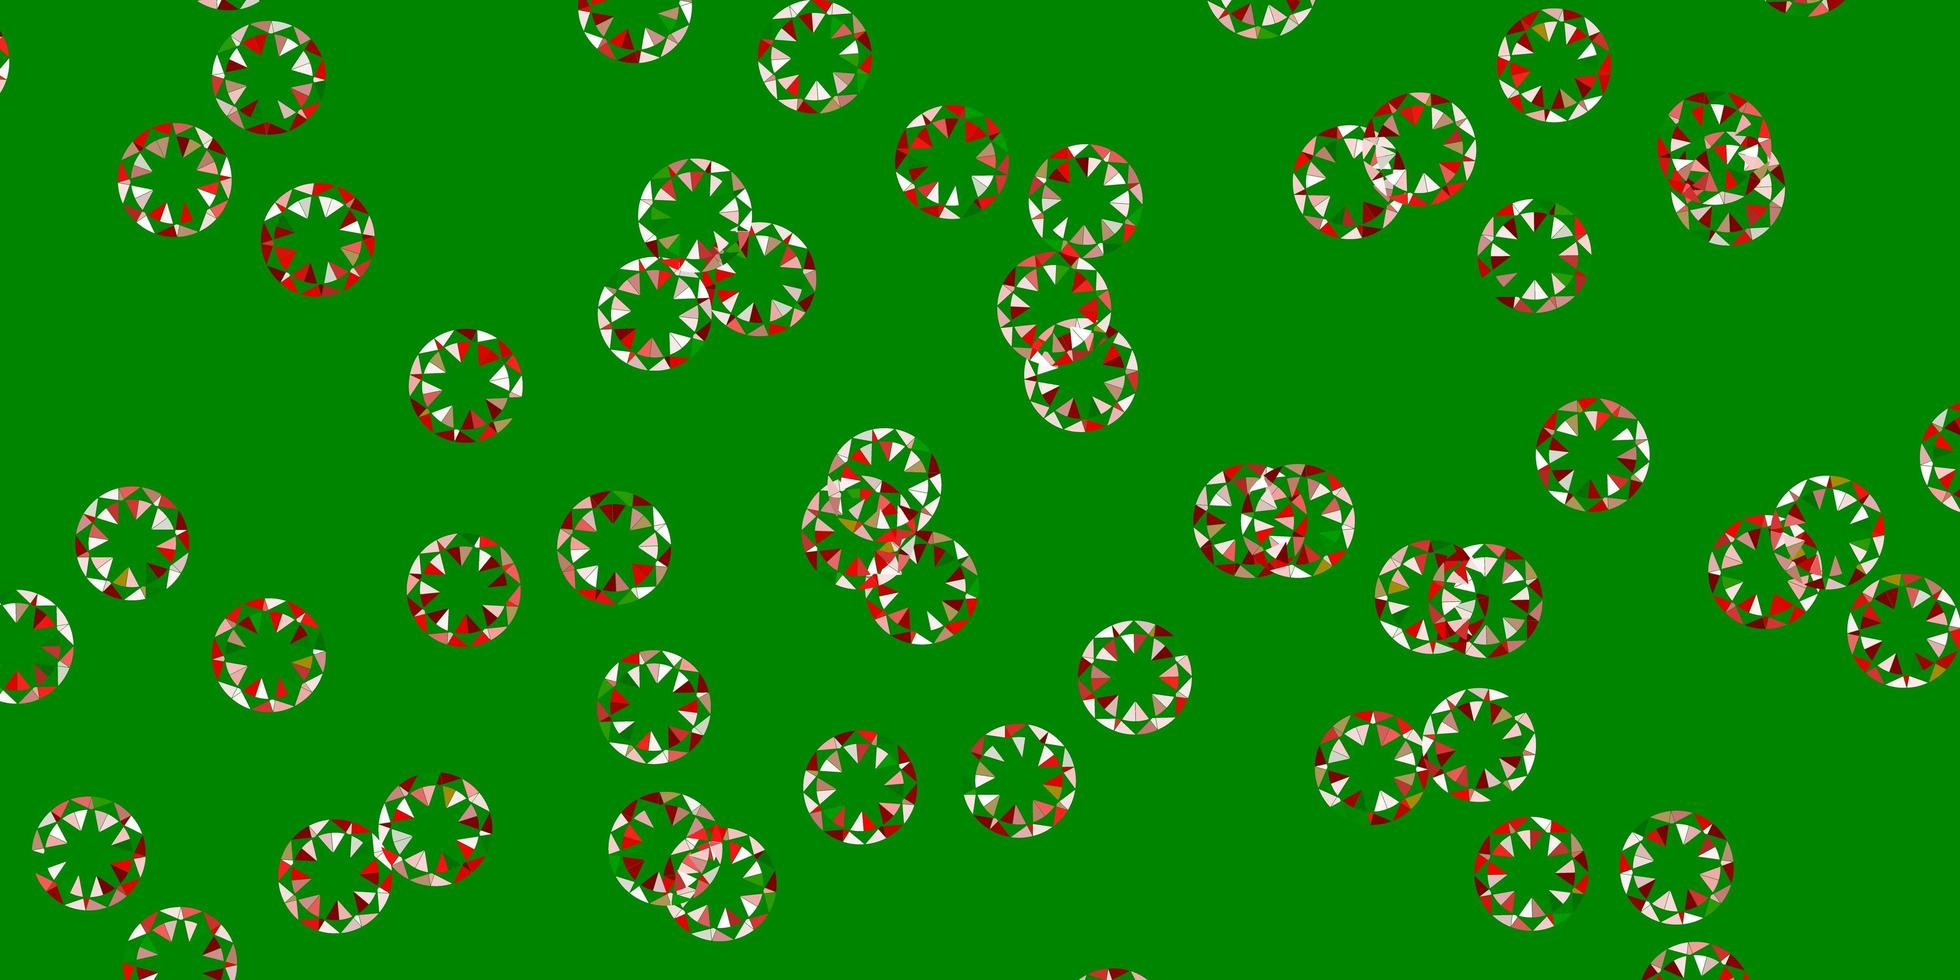 modelo de vetor verde e vermelho claro com círculos.